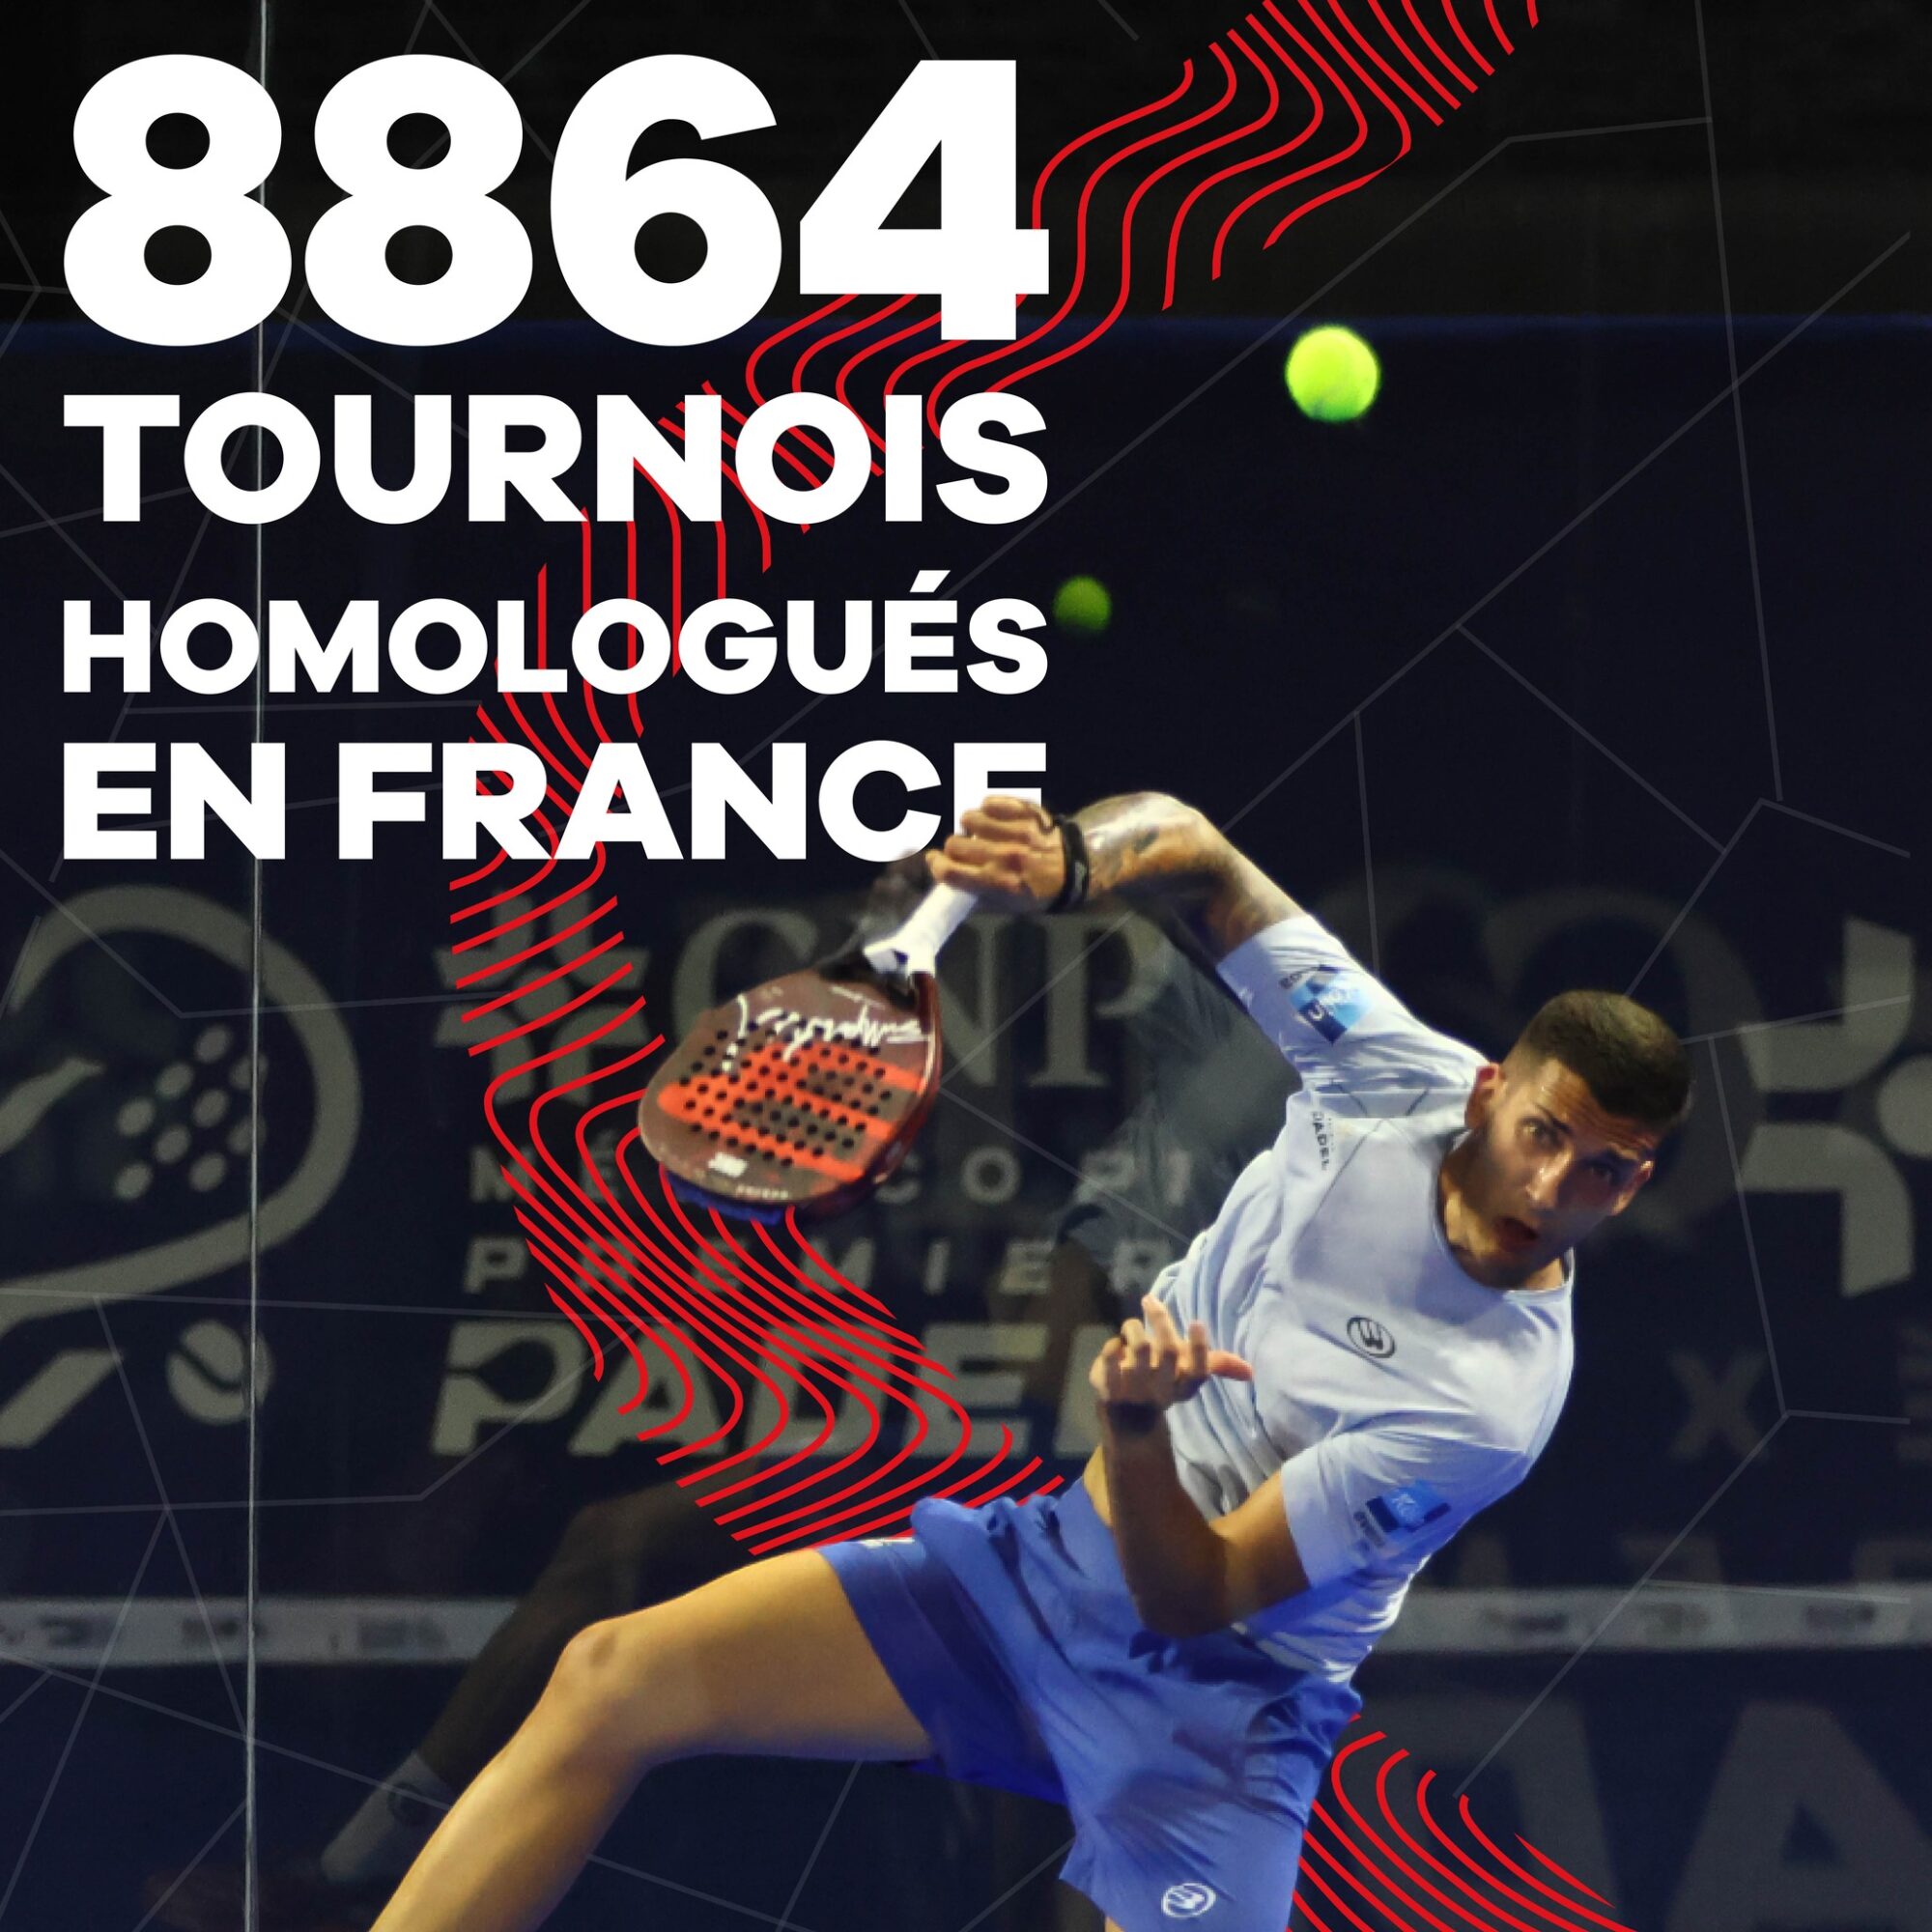 フランスで承認されたトーナメントは 8864 件あります